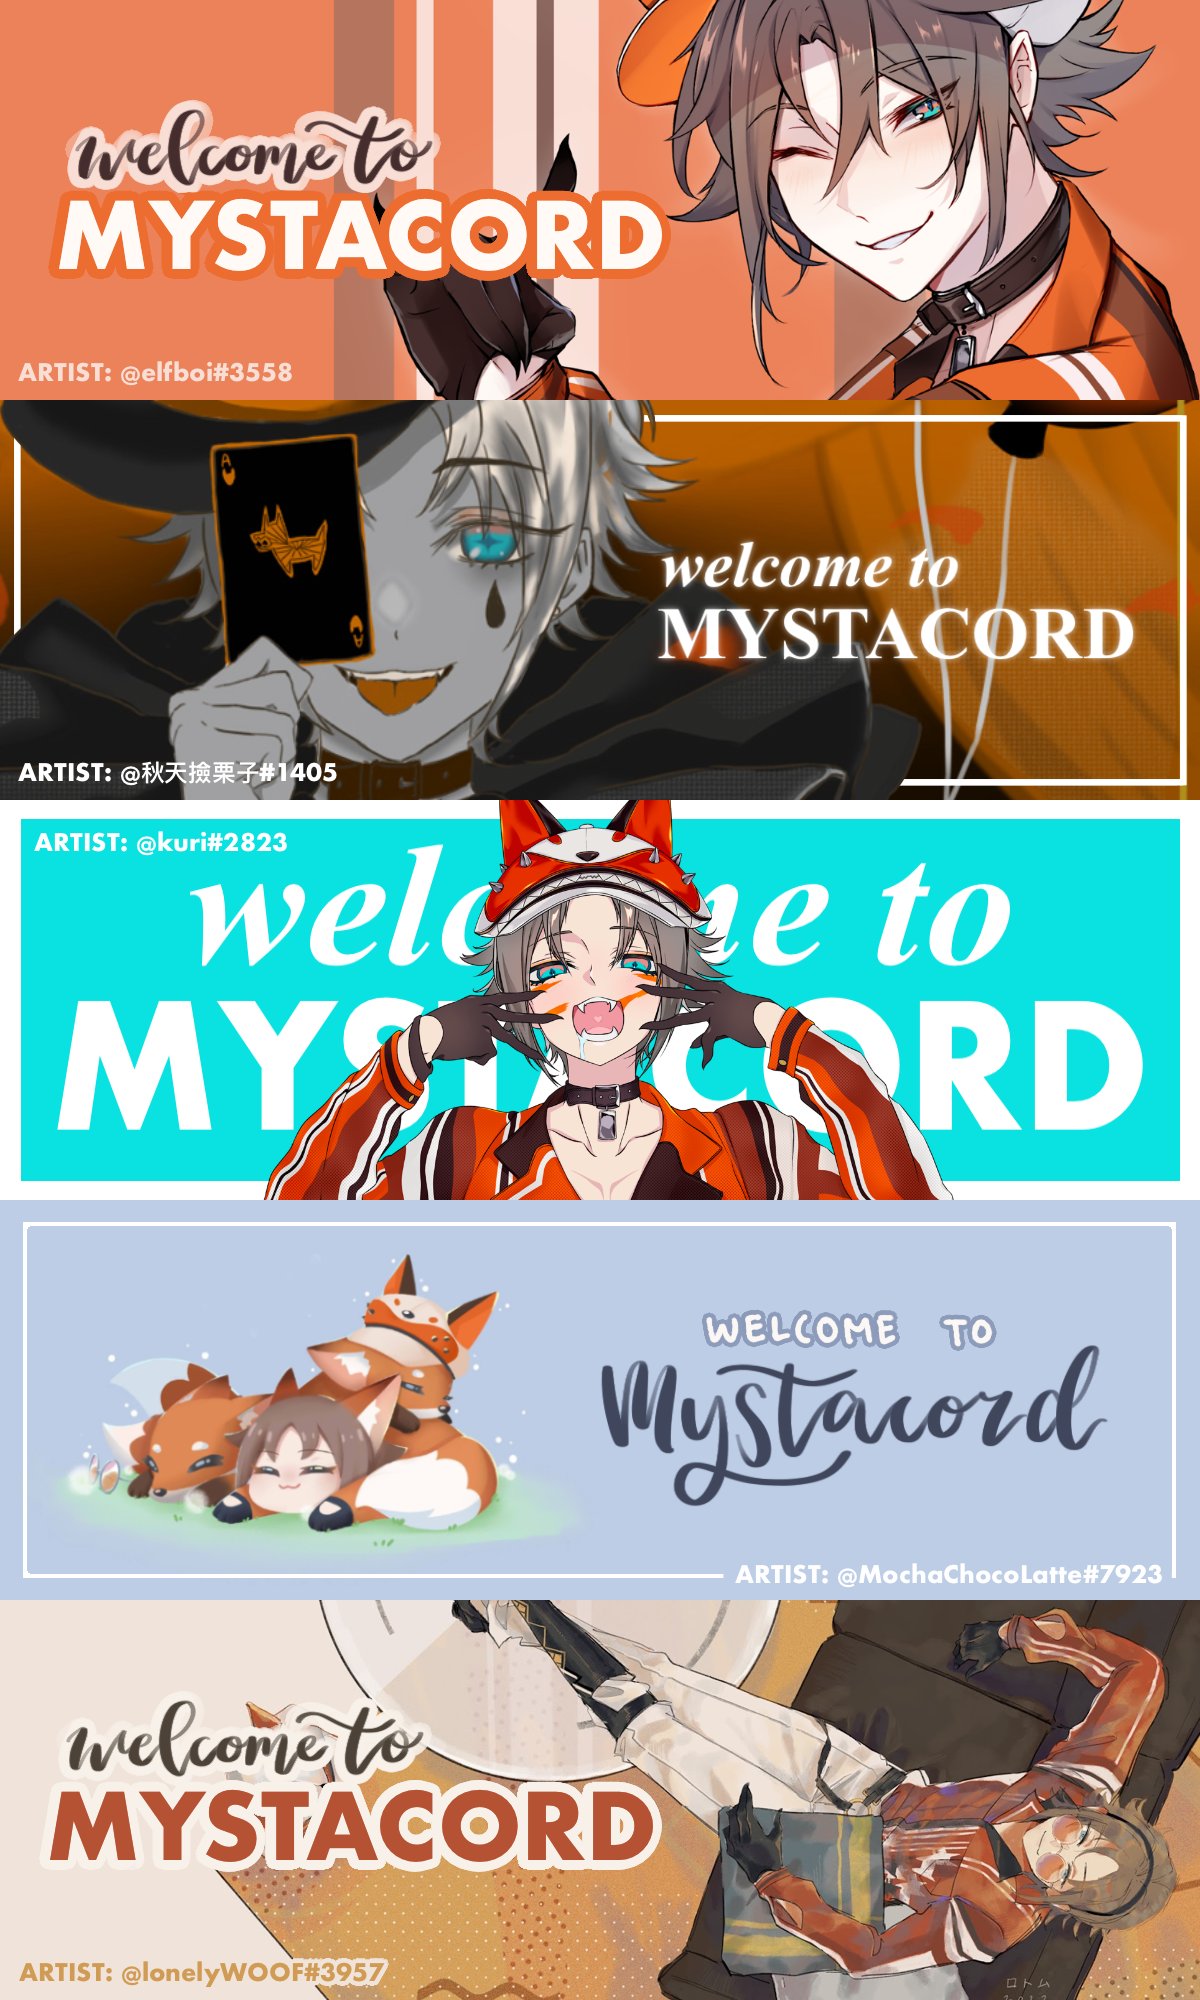 Mysta's Mystakes (Mysta Rias' Discord Fanserver) (@Mystacord) / X